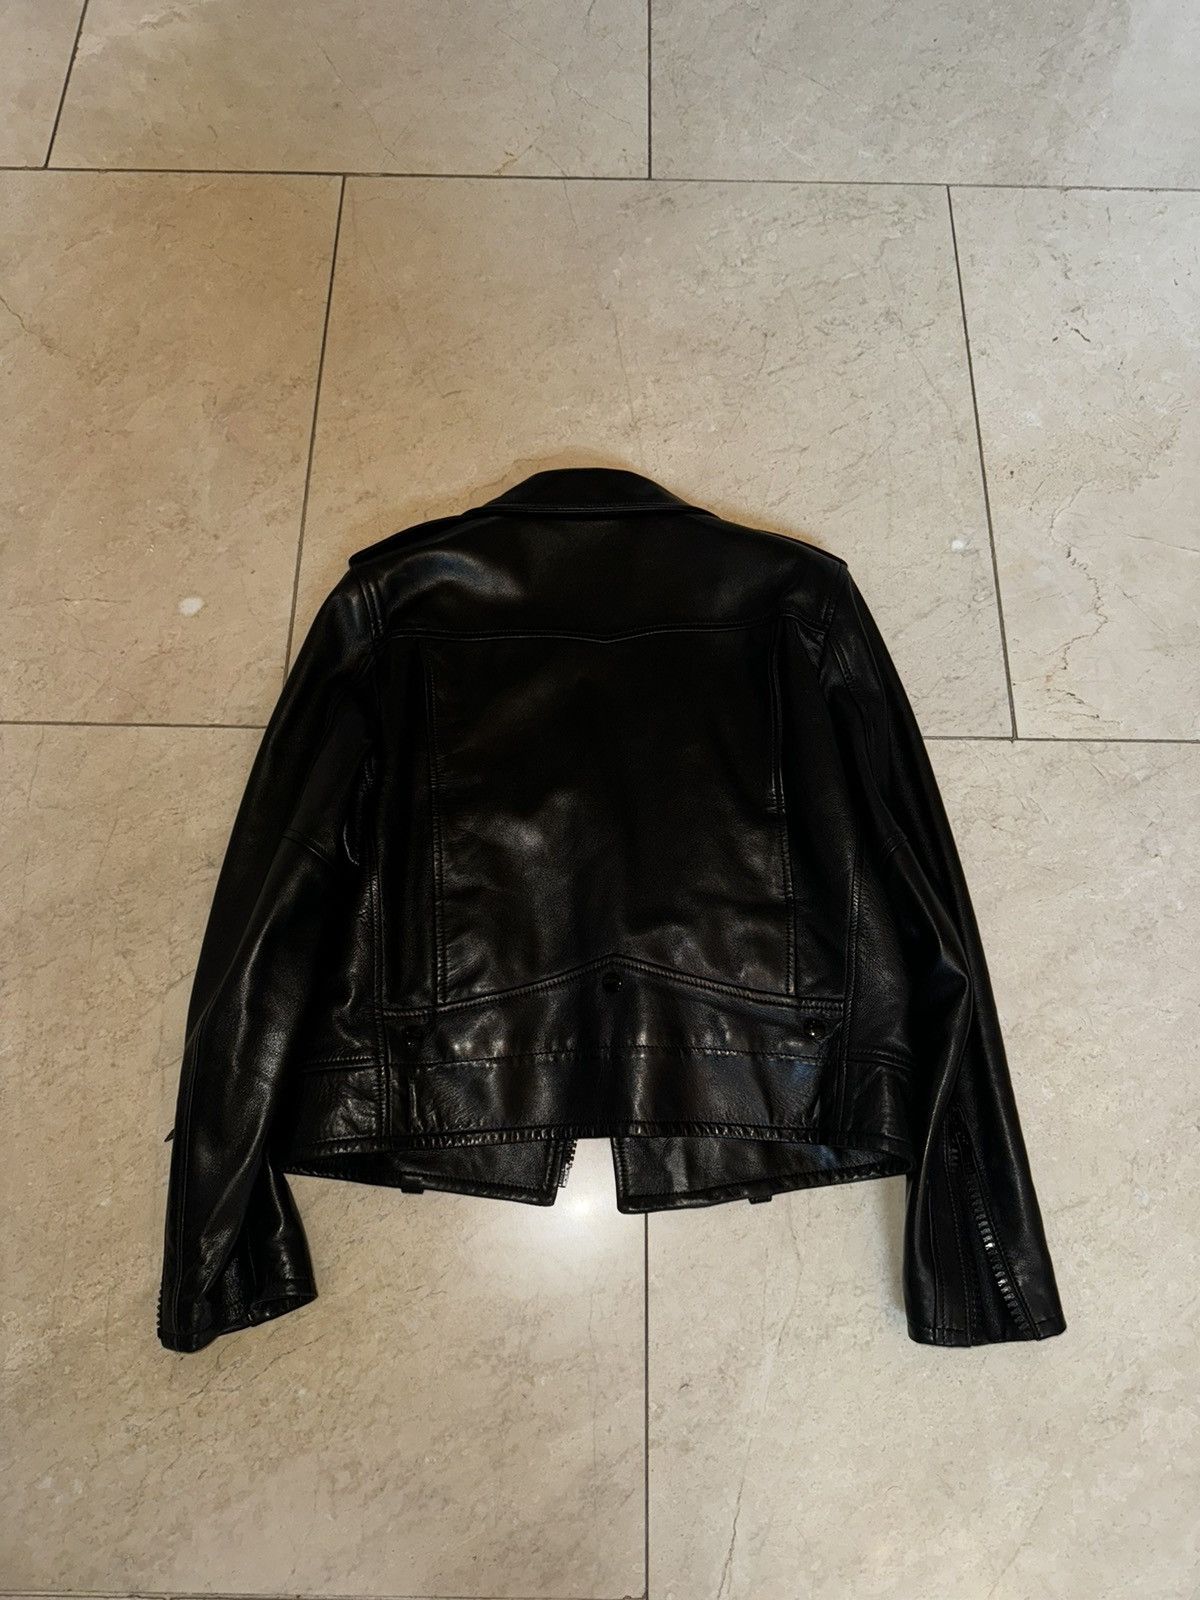 Saint Laurent Paris Black Leather Moto Jacket Size M / US 6-8 / IT 42-44 - 3 Thumbnail